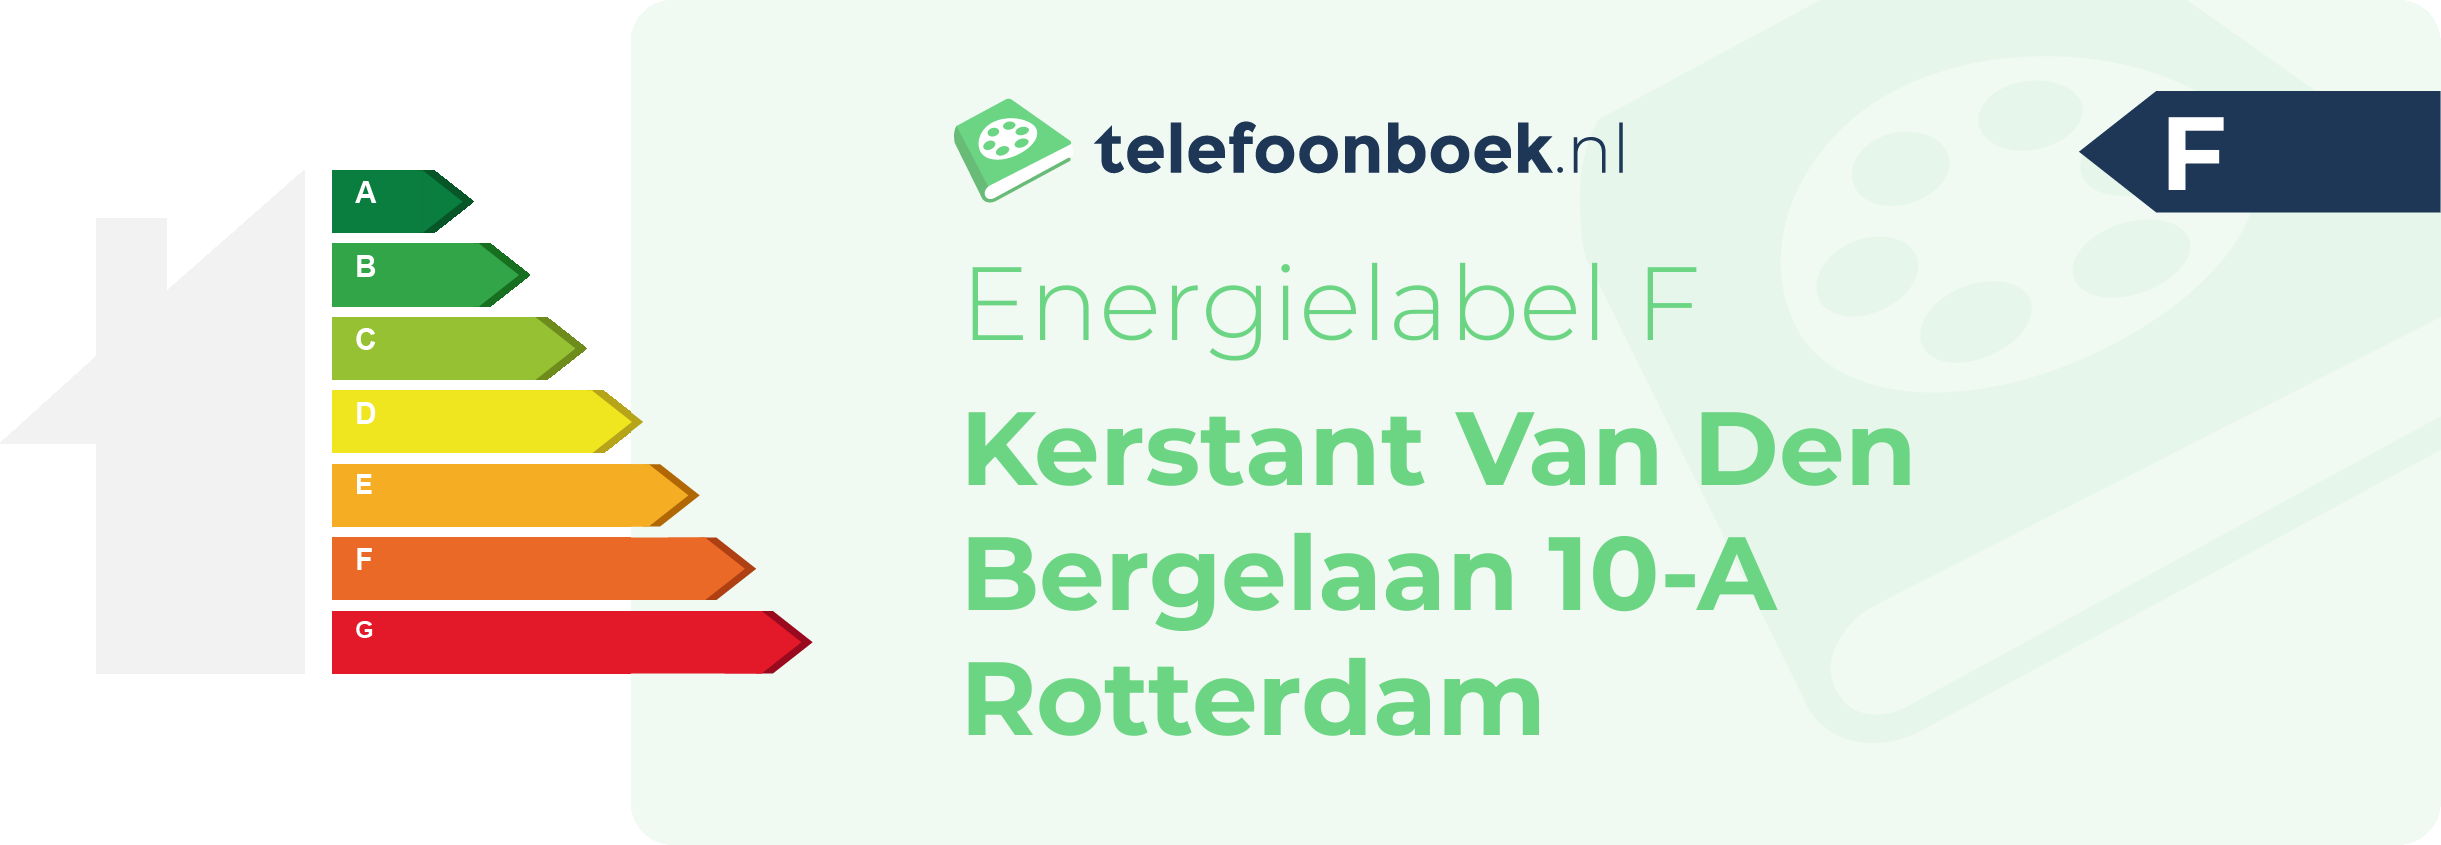 Energielabel Kerstant Van Den Bergelaan 10-A Rotterdam